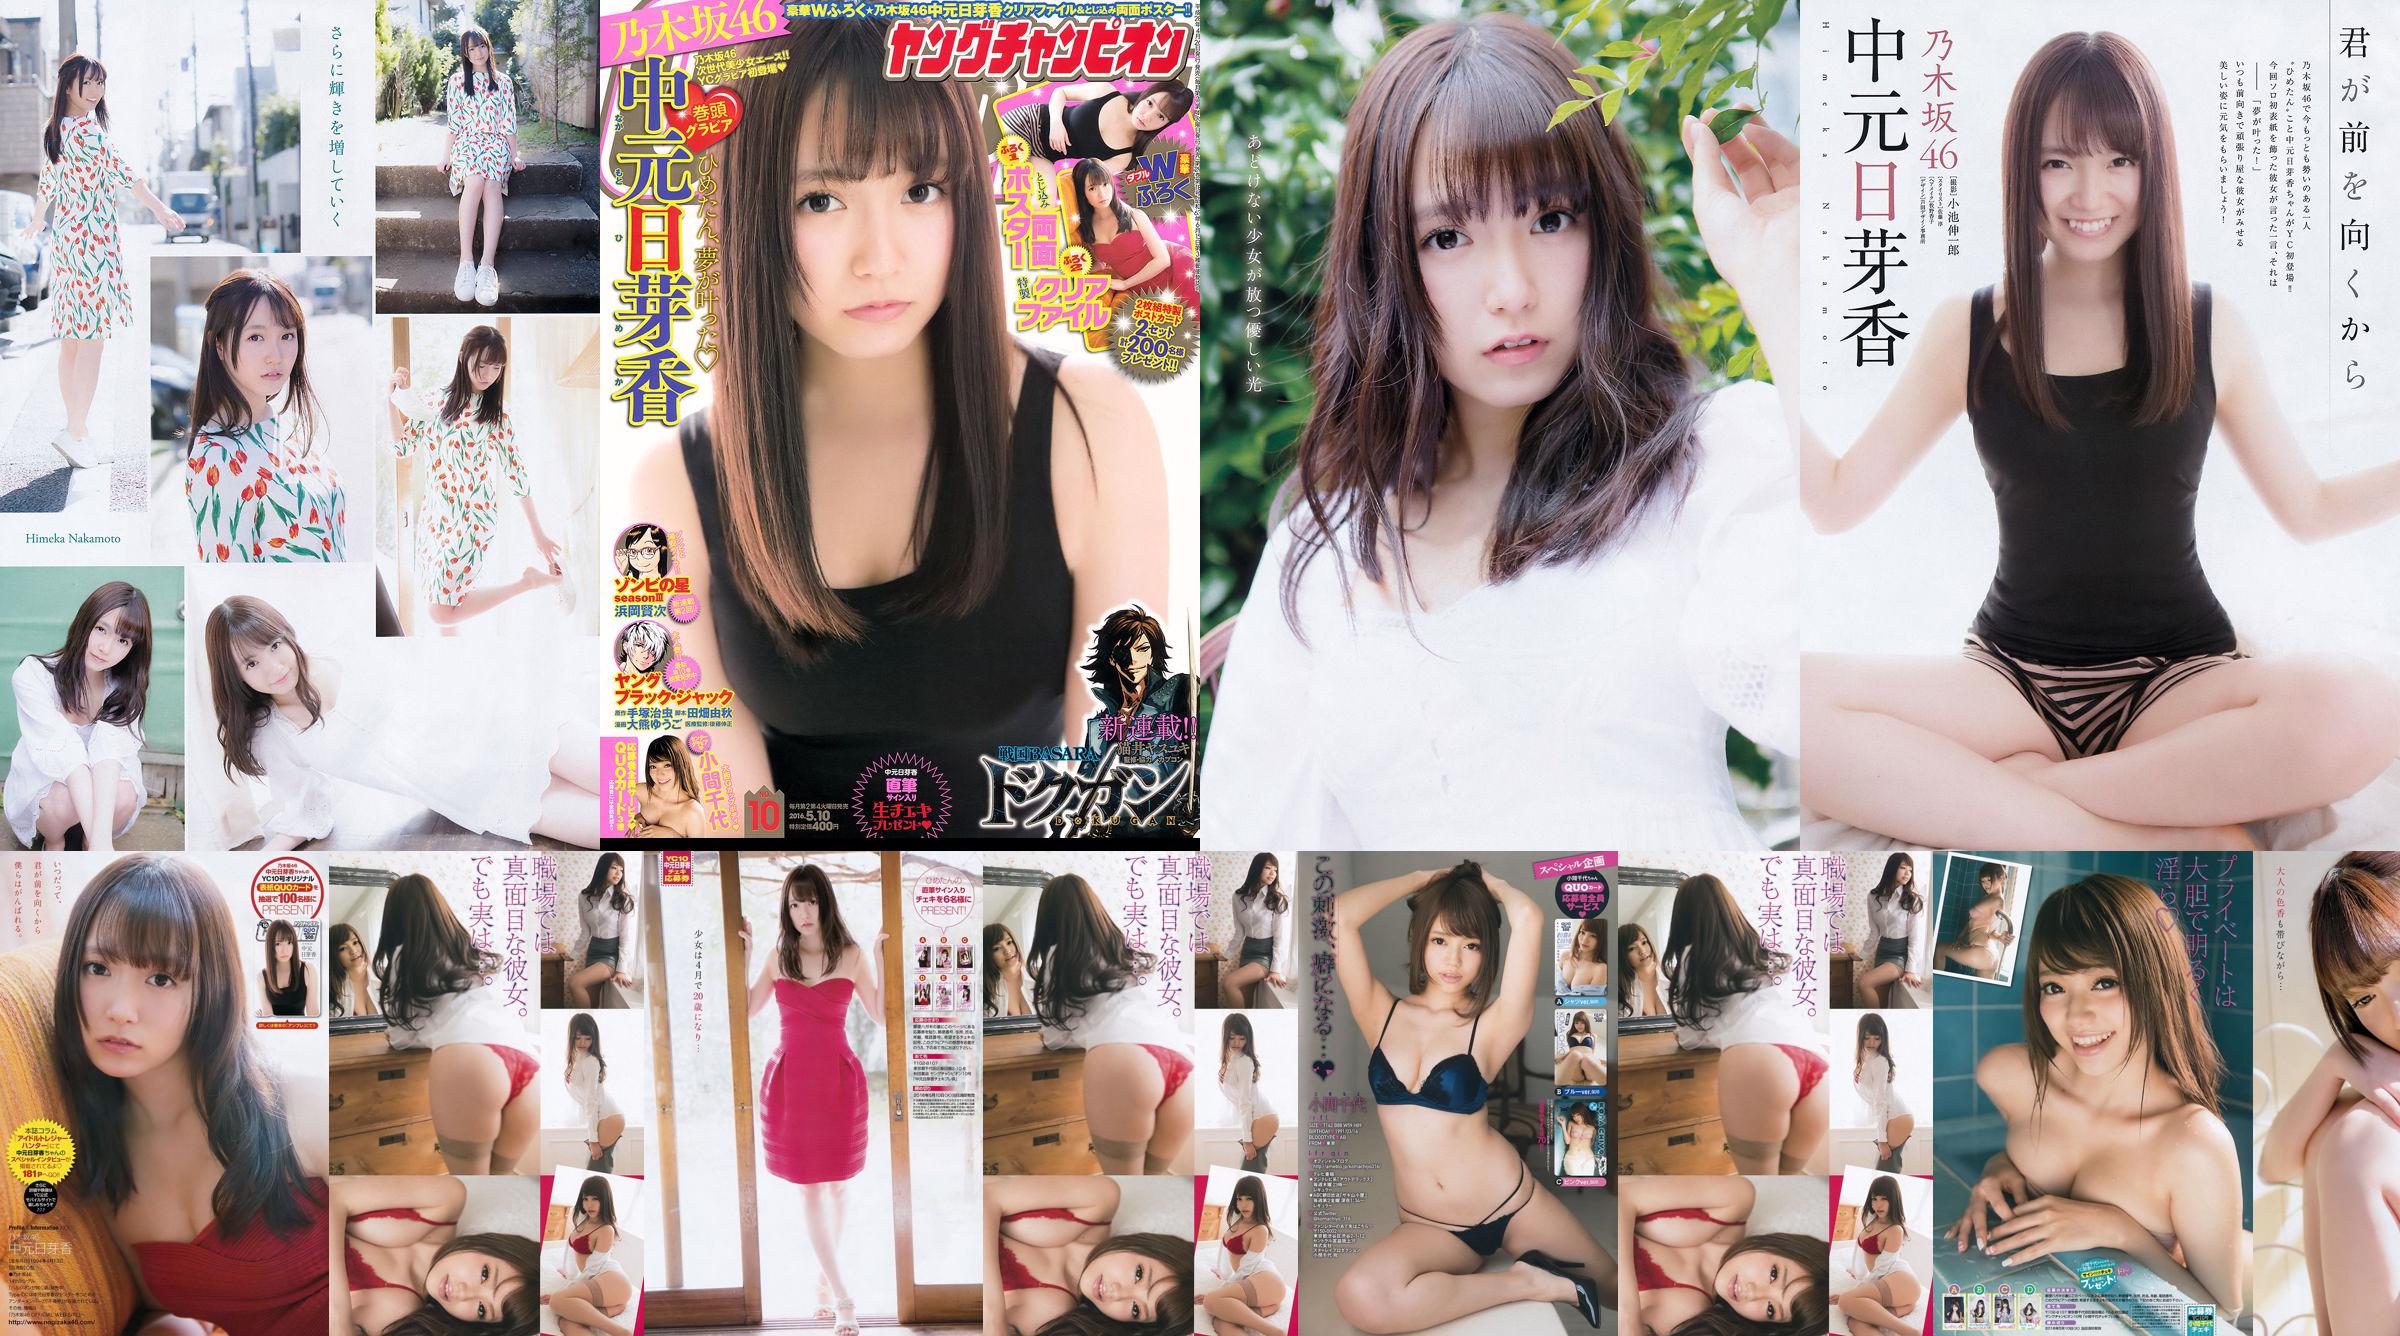 [Jeune Champion] Nakamoto Nichiko Koma Chiyo 2016 Magazine photo n ° 10 No.f378da Page 1